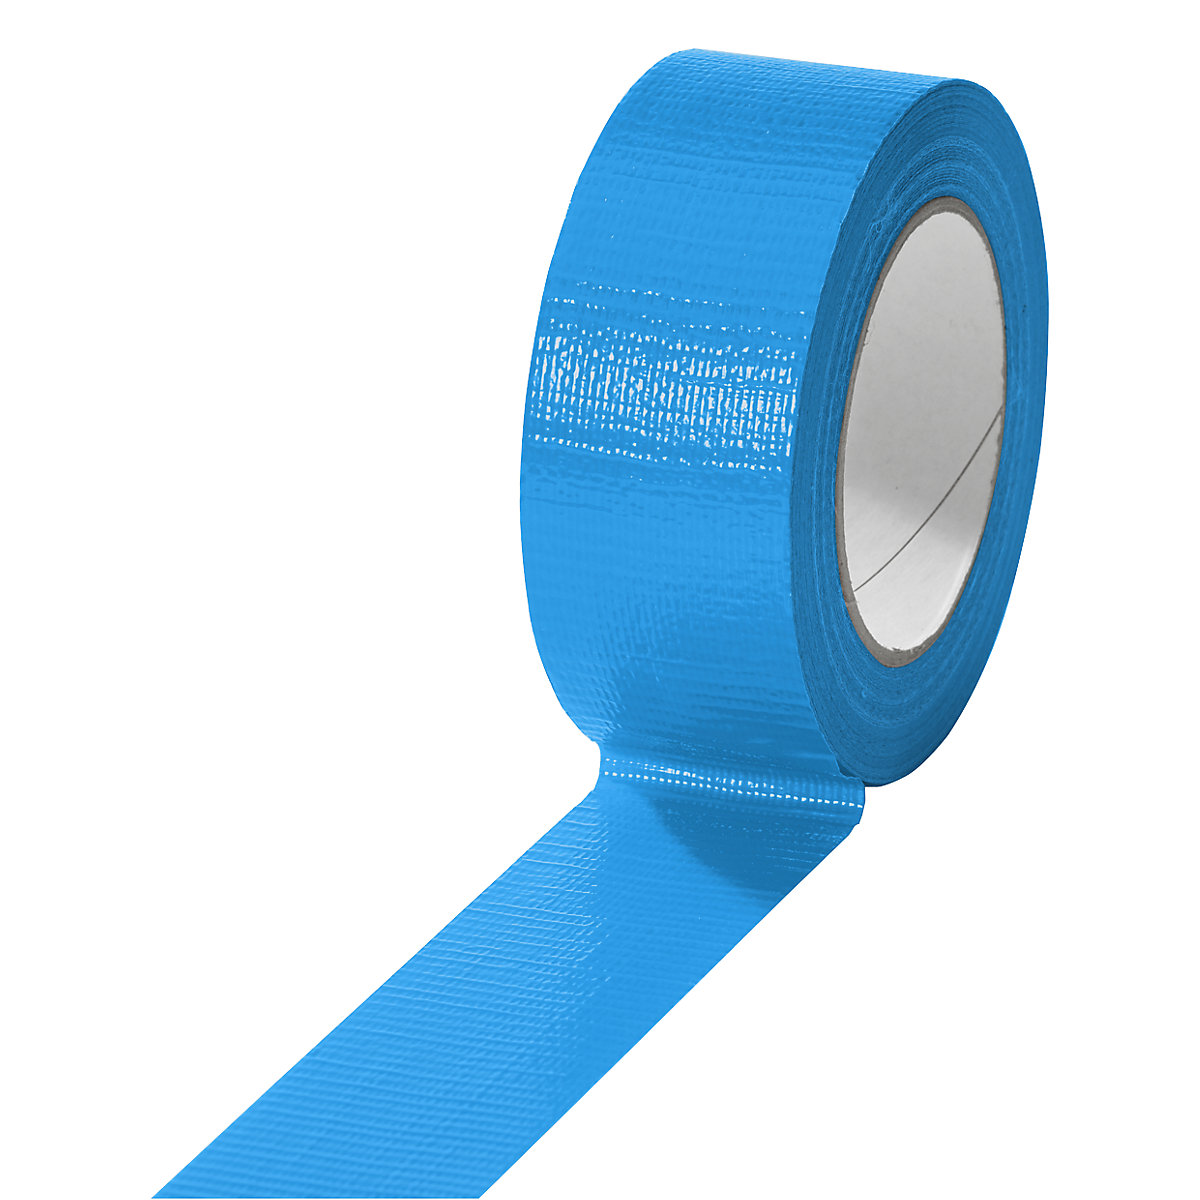 Cinta de tejido, en diferentes colores, UE 24 rollos, azul, anchura de cinta 38 mm-5